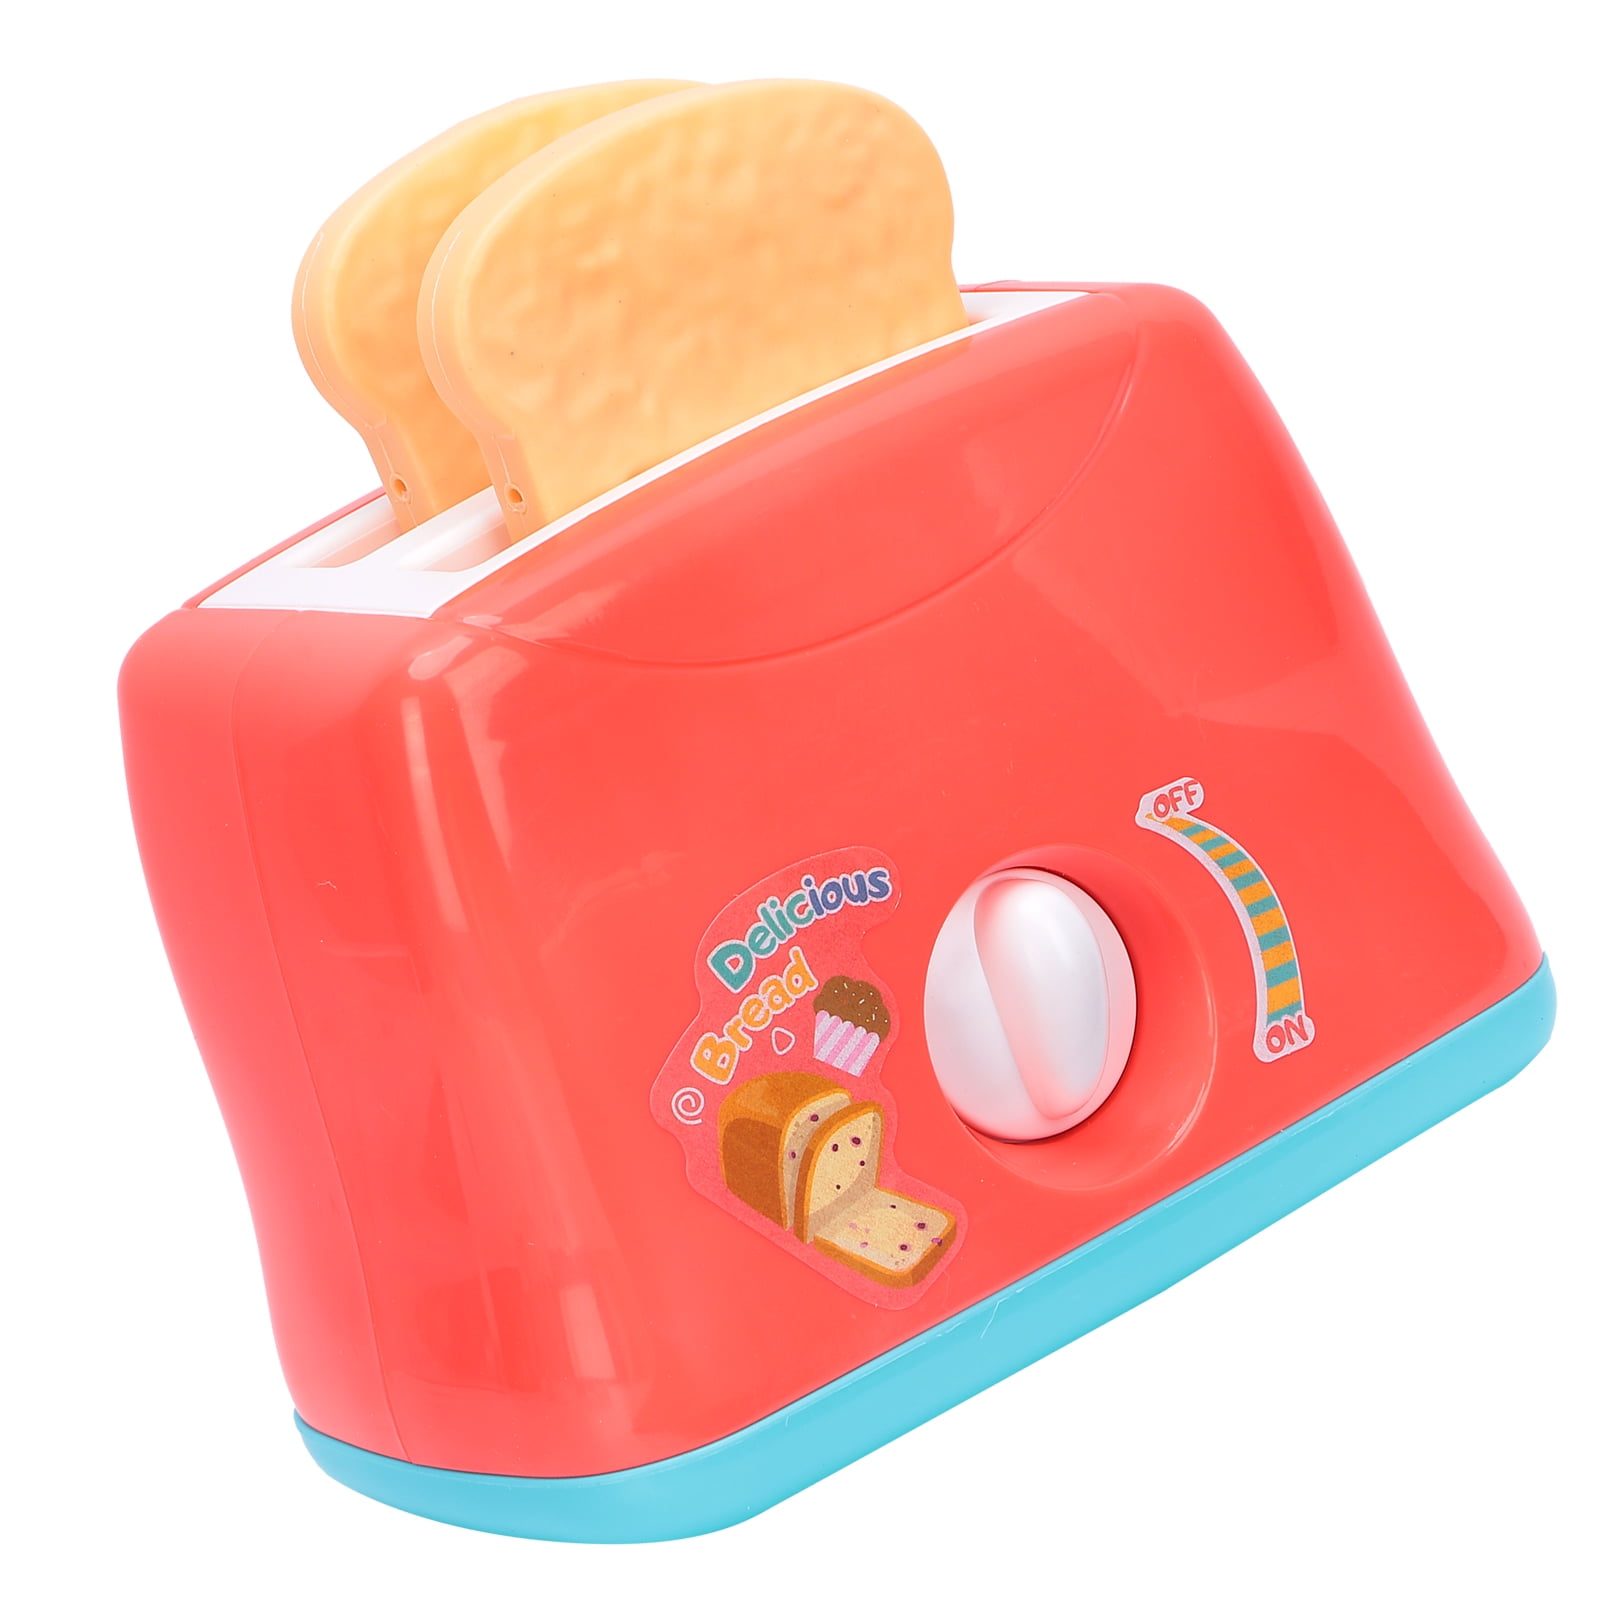 Søgemaskine markedsføring grøntsager Lænestol EBTOOLS Bread Toaster Toy,Pop‑Up Toaster Play Toy Kitchen Bread Maker Model  Toy Pretend Food Playset For Kids,Pop‑Up Toaster Play Toy - Walmart.com